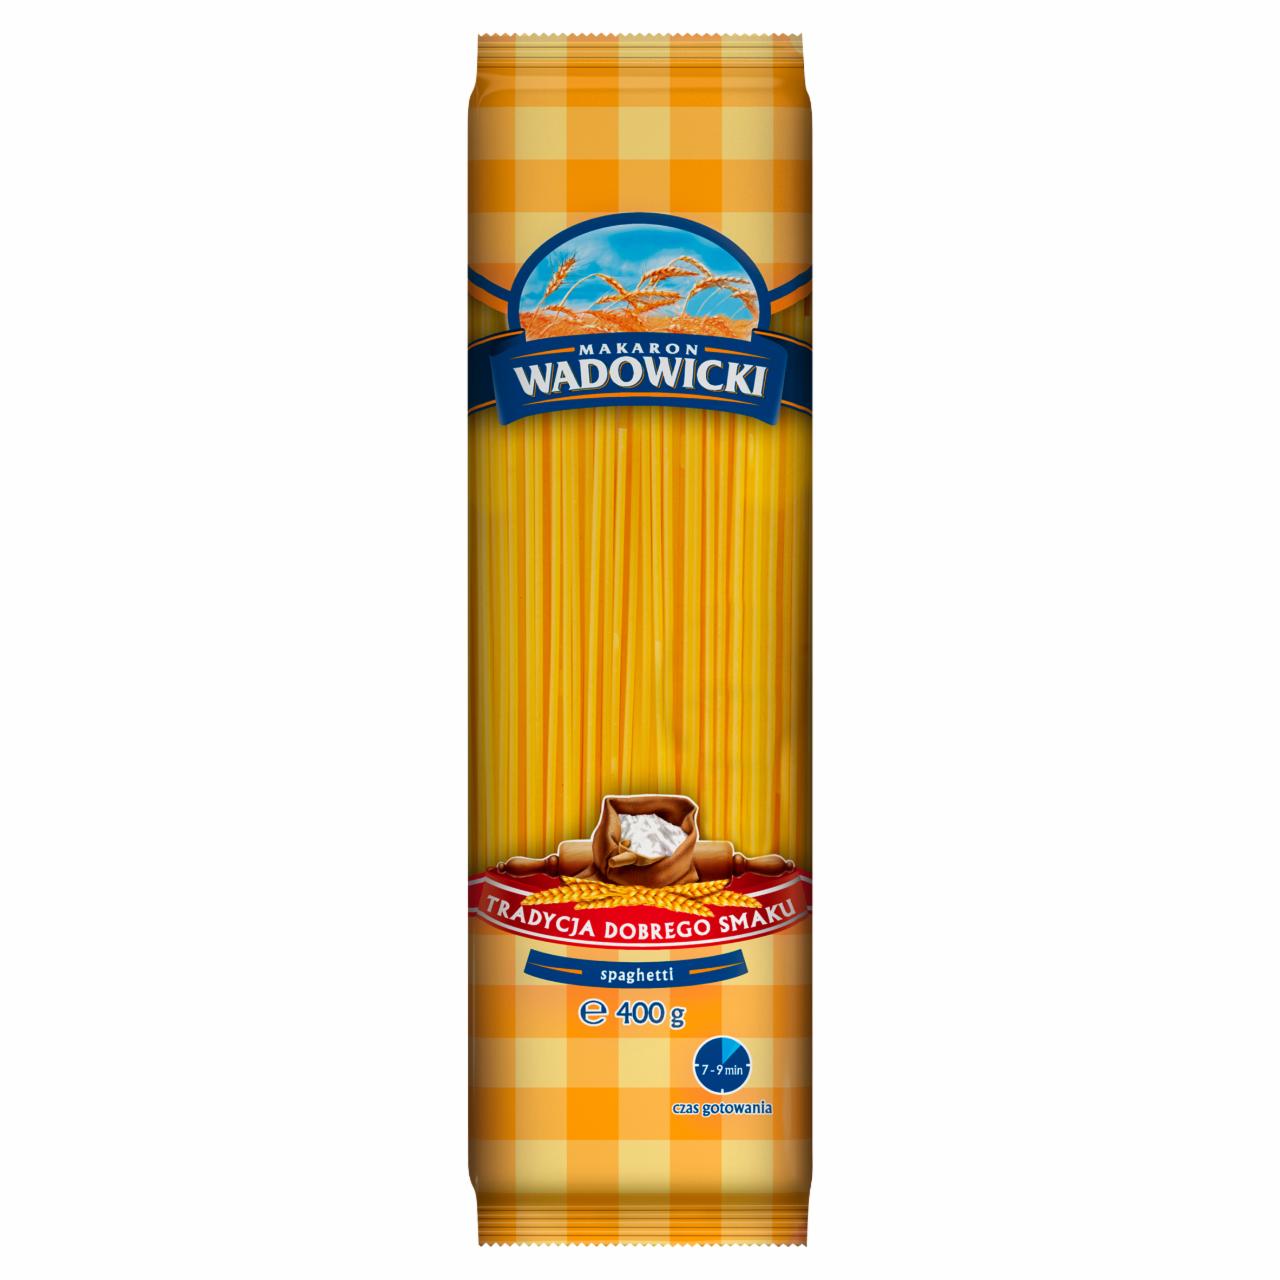 Zdjęcia - Makaron Wadowicki Spaghetti 400 g